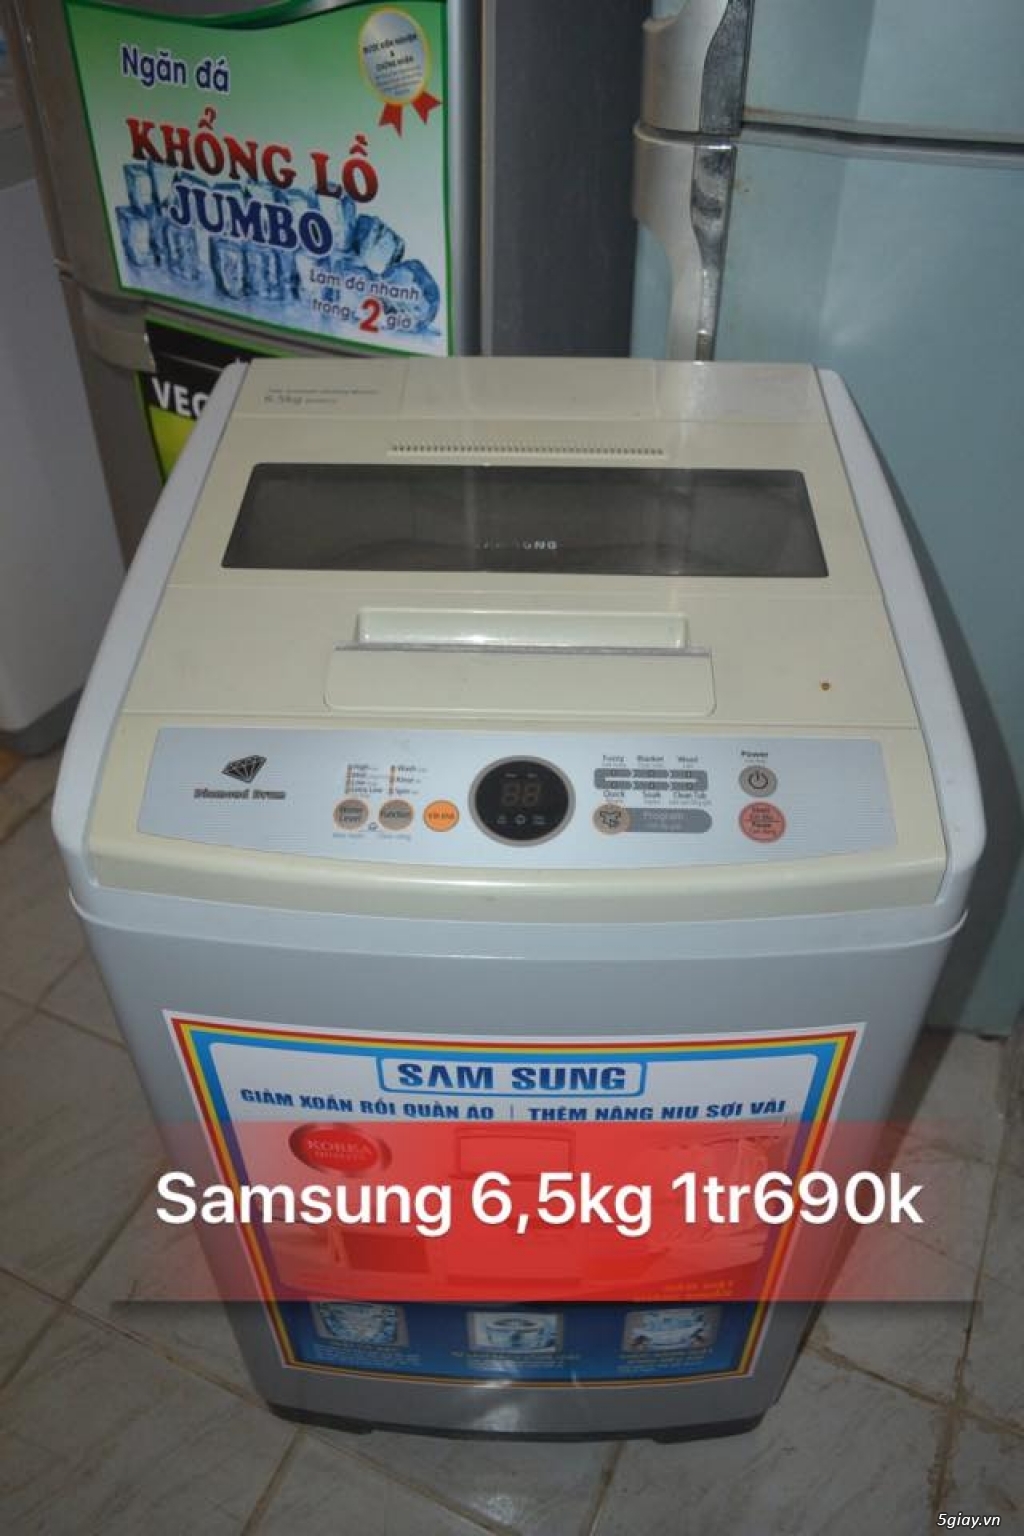 Máy giặt cũ Samsung 6,5kg Bh 6T,Freeship nội thành,Bao công lắp đặt